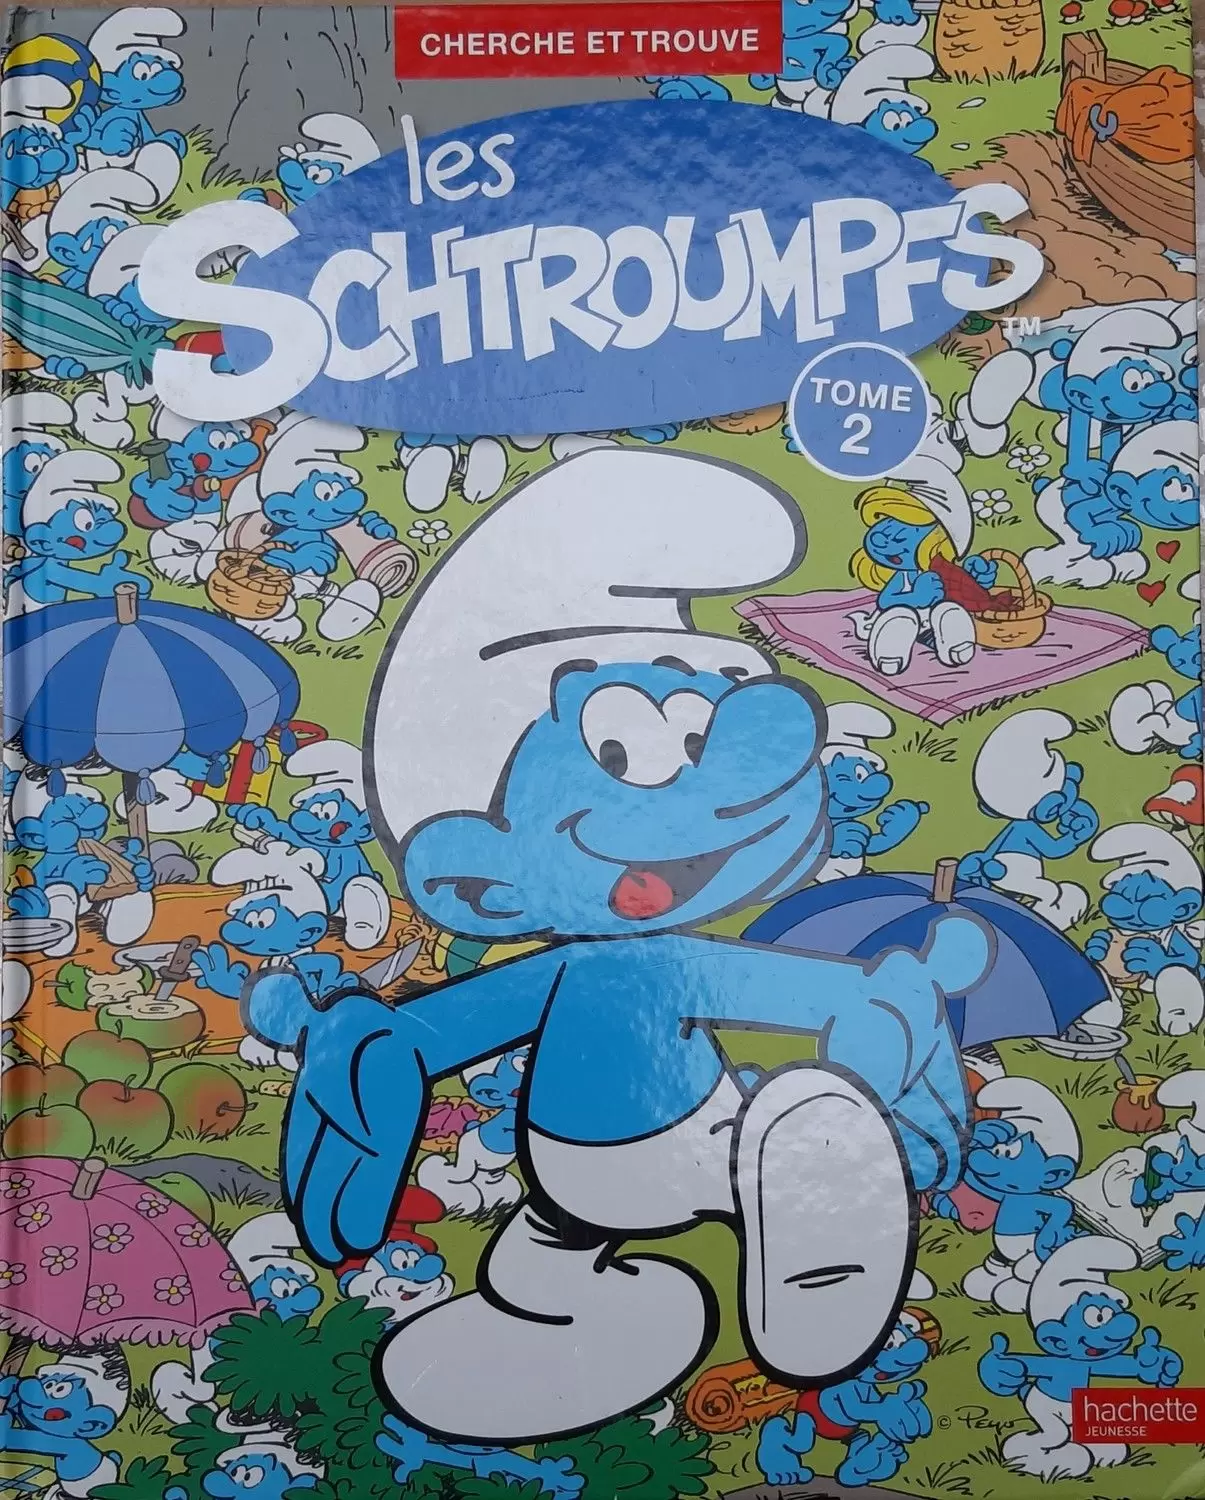 Les Schtroumpfs - Cherche er trouve les schtroumpfs tome2